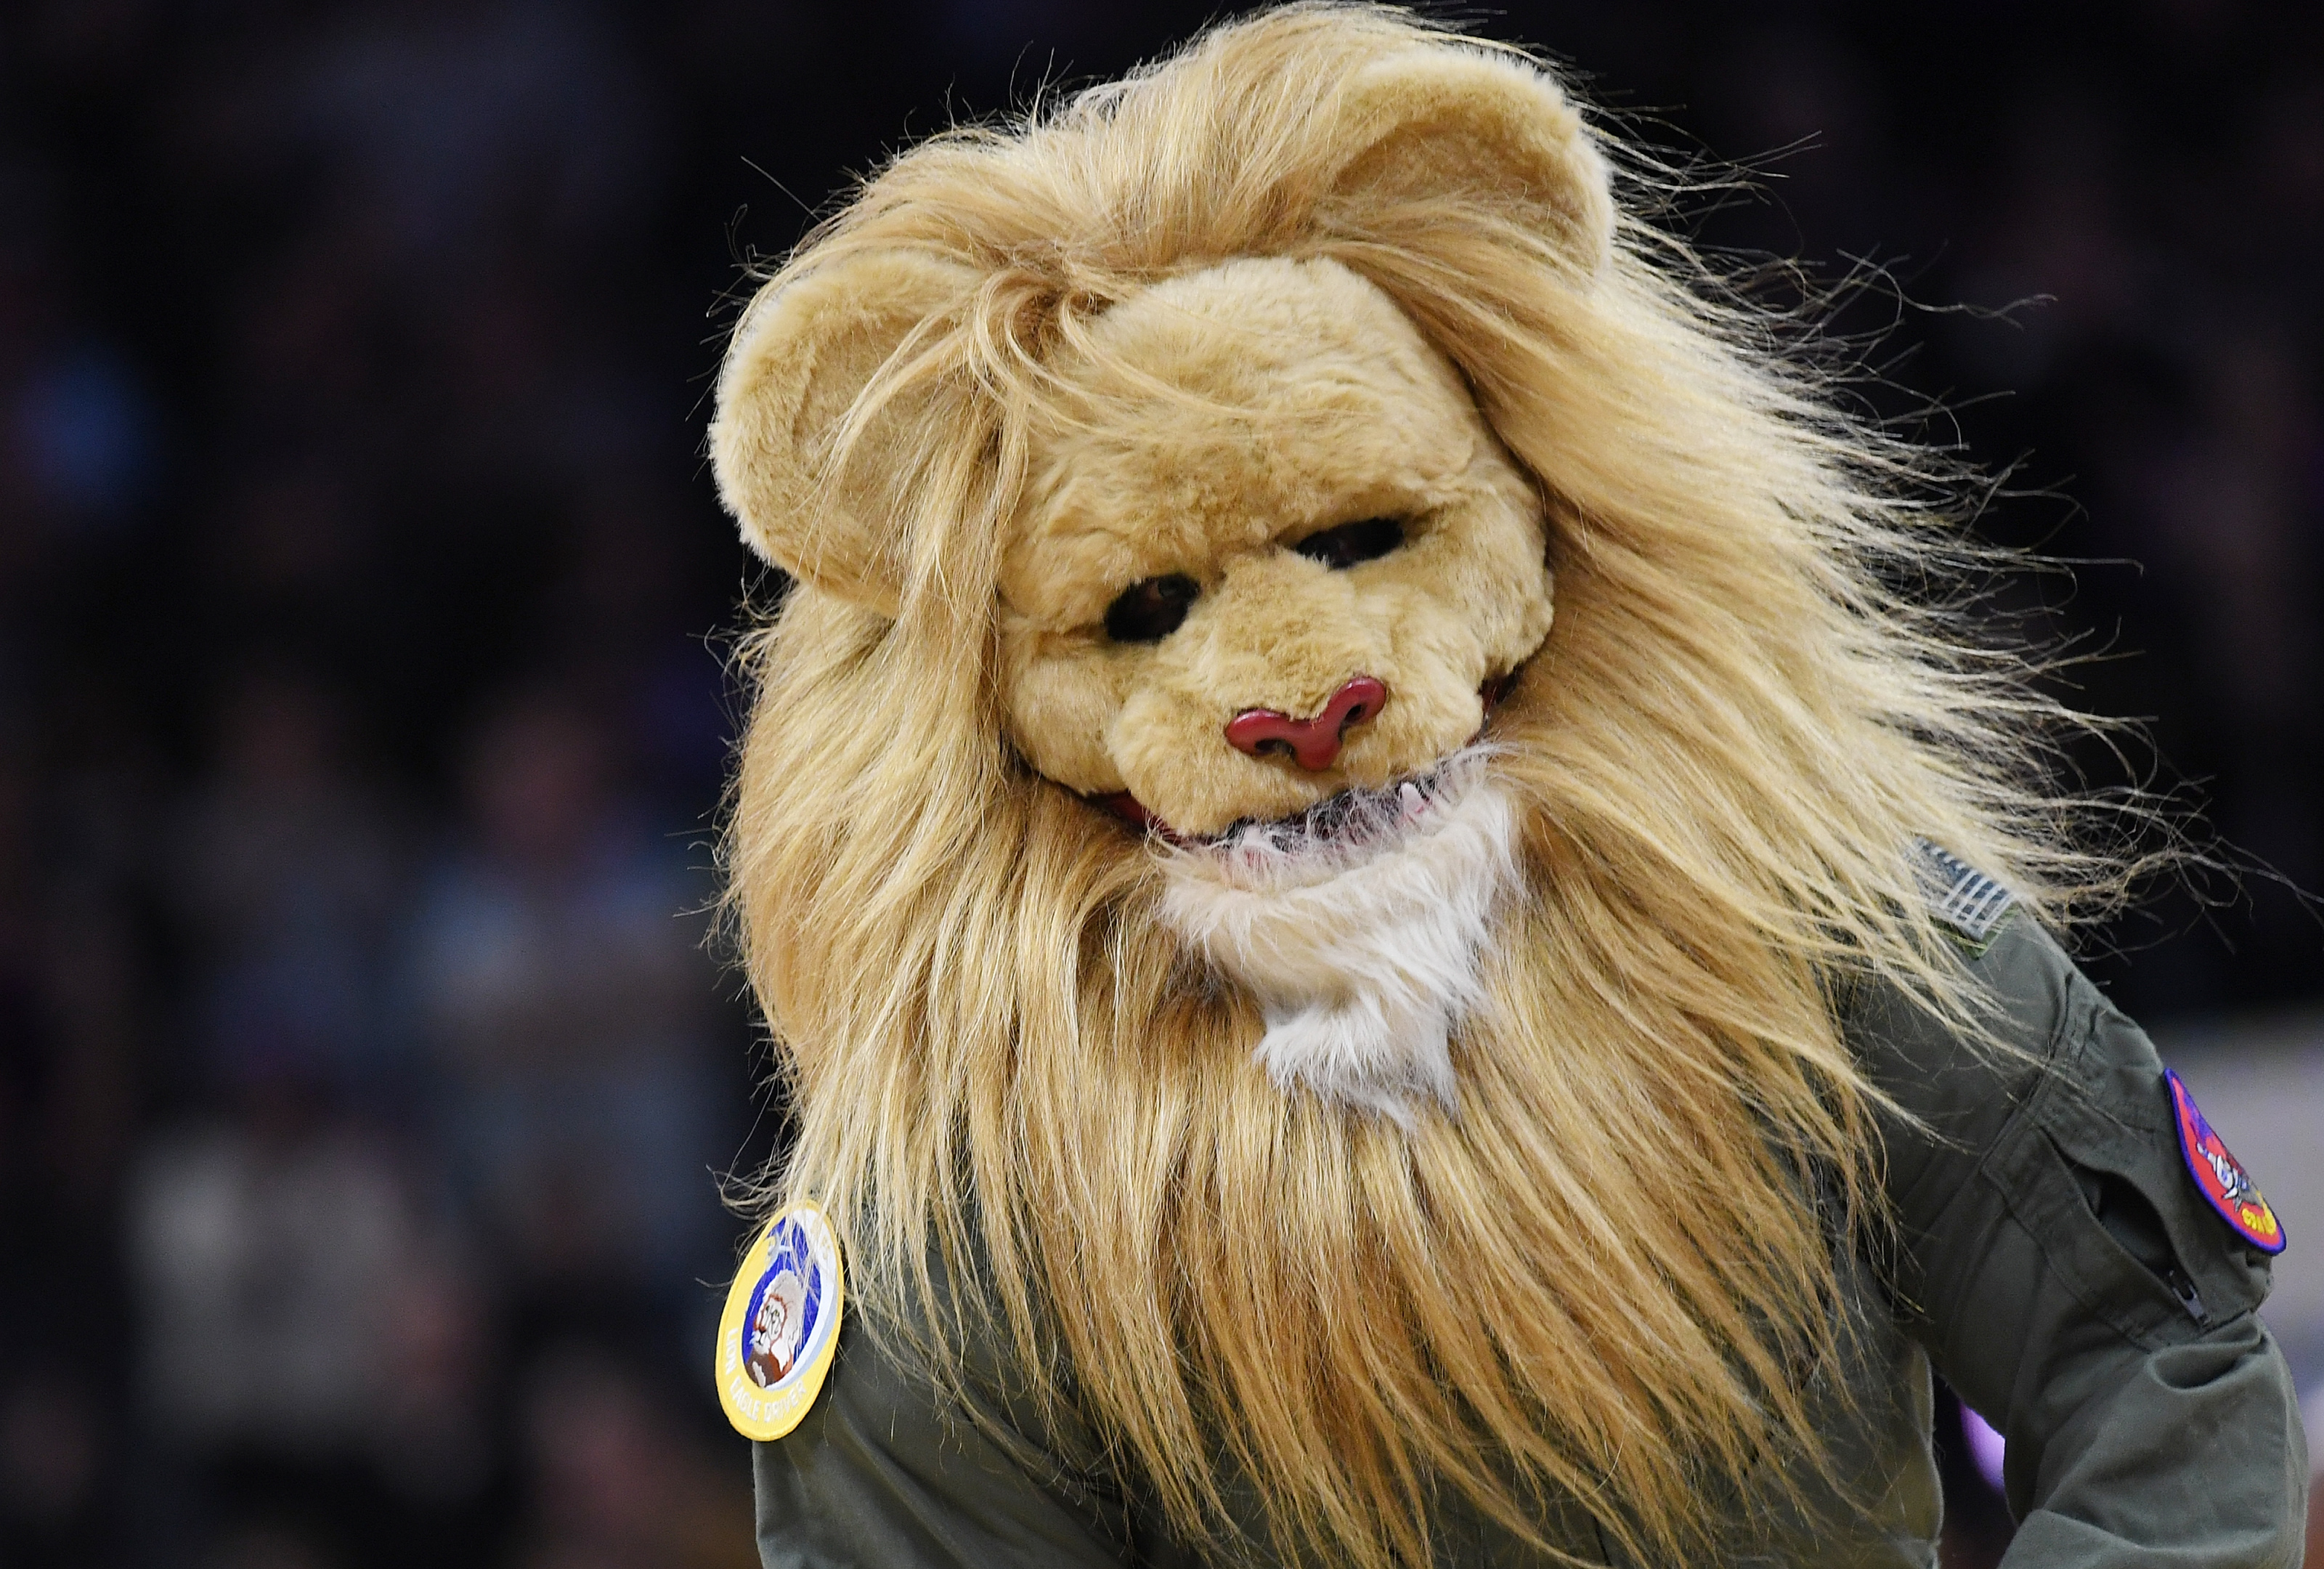 Who is the Sacramento Kings' Mascot Slamson the Lion?